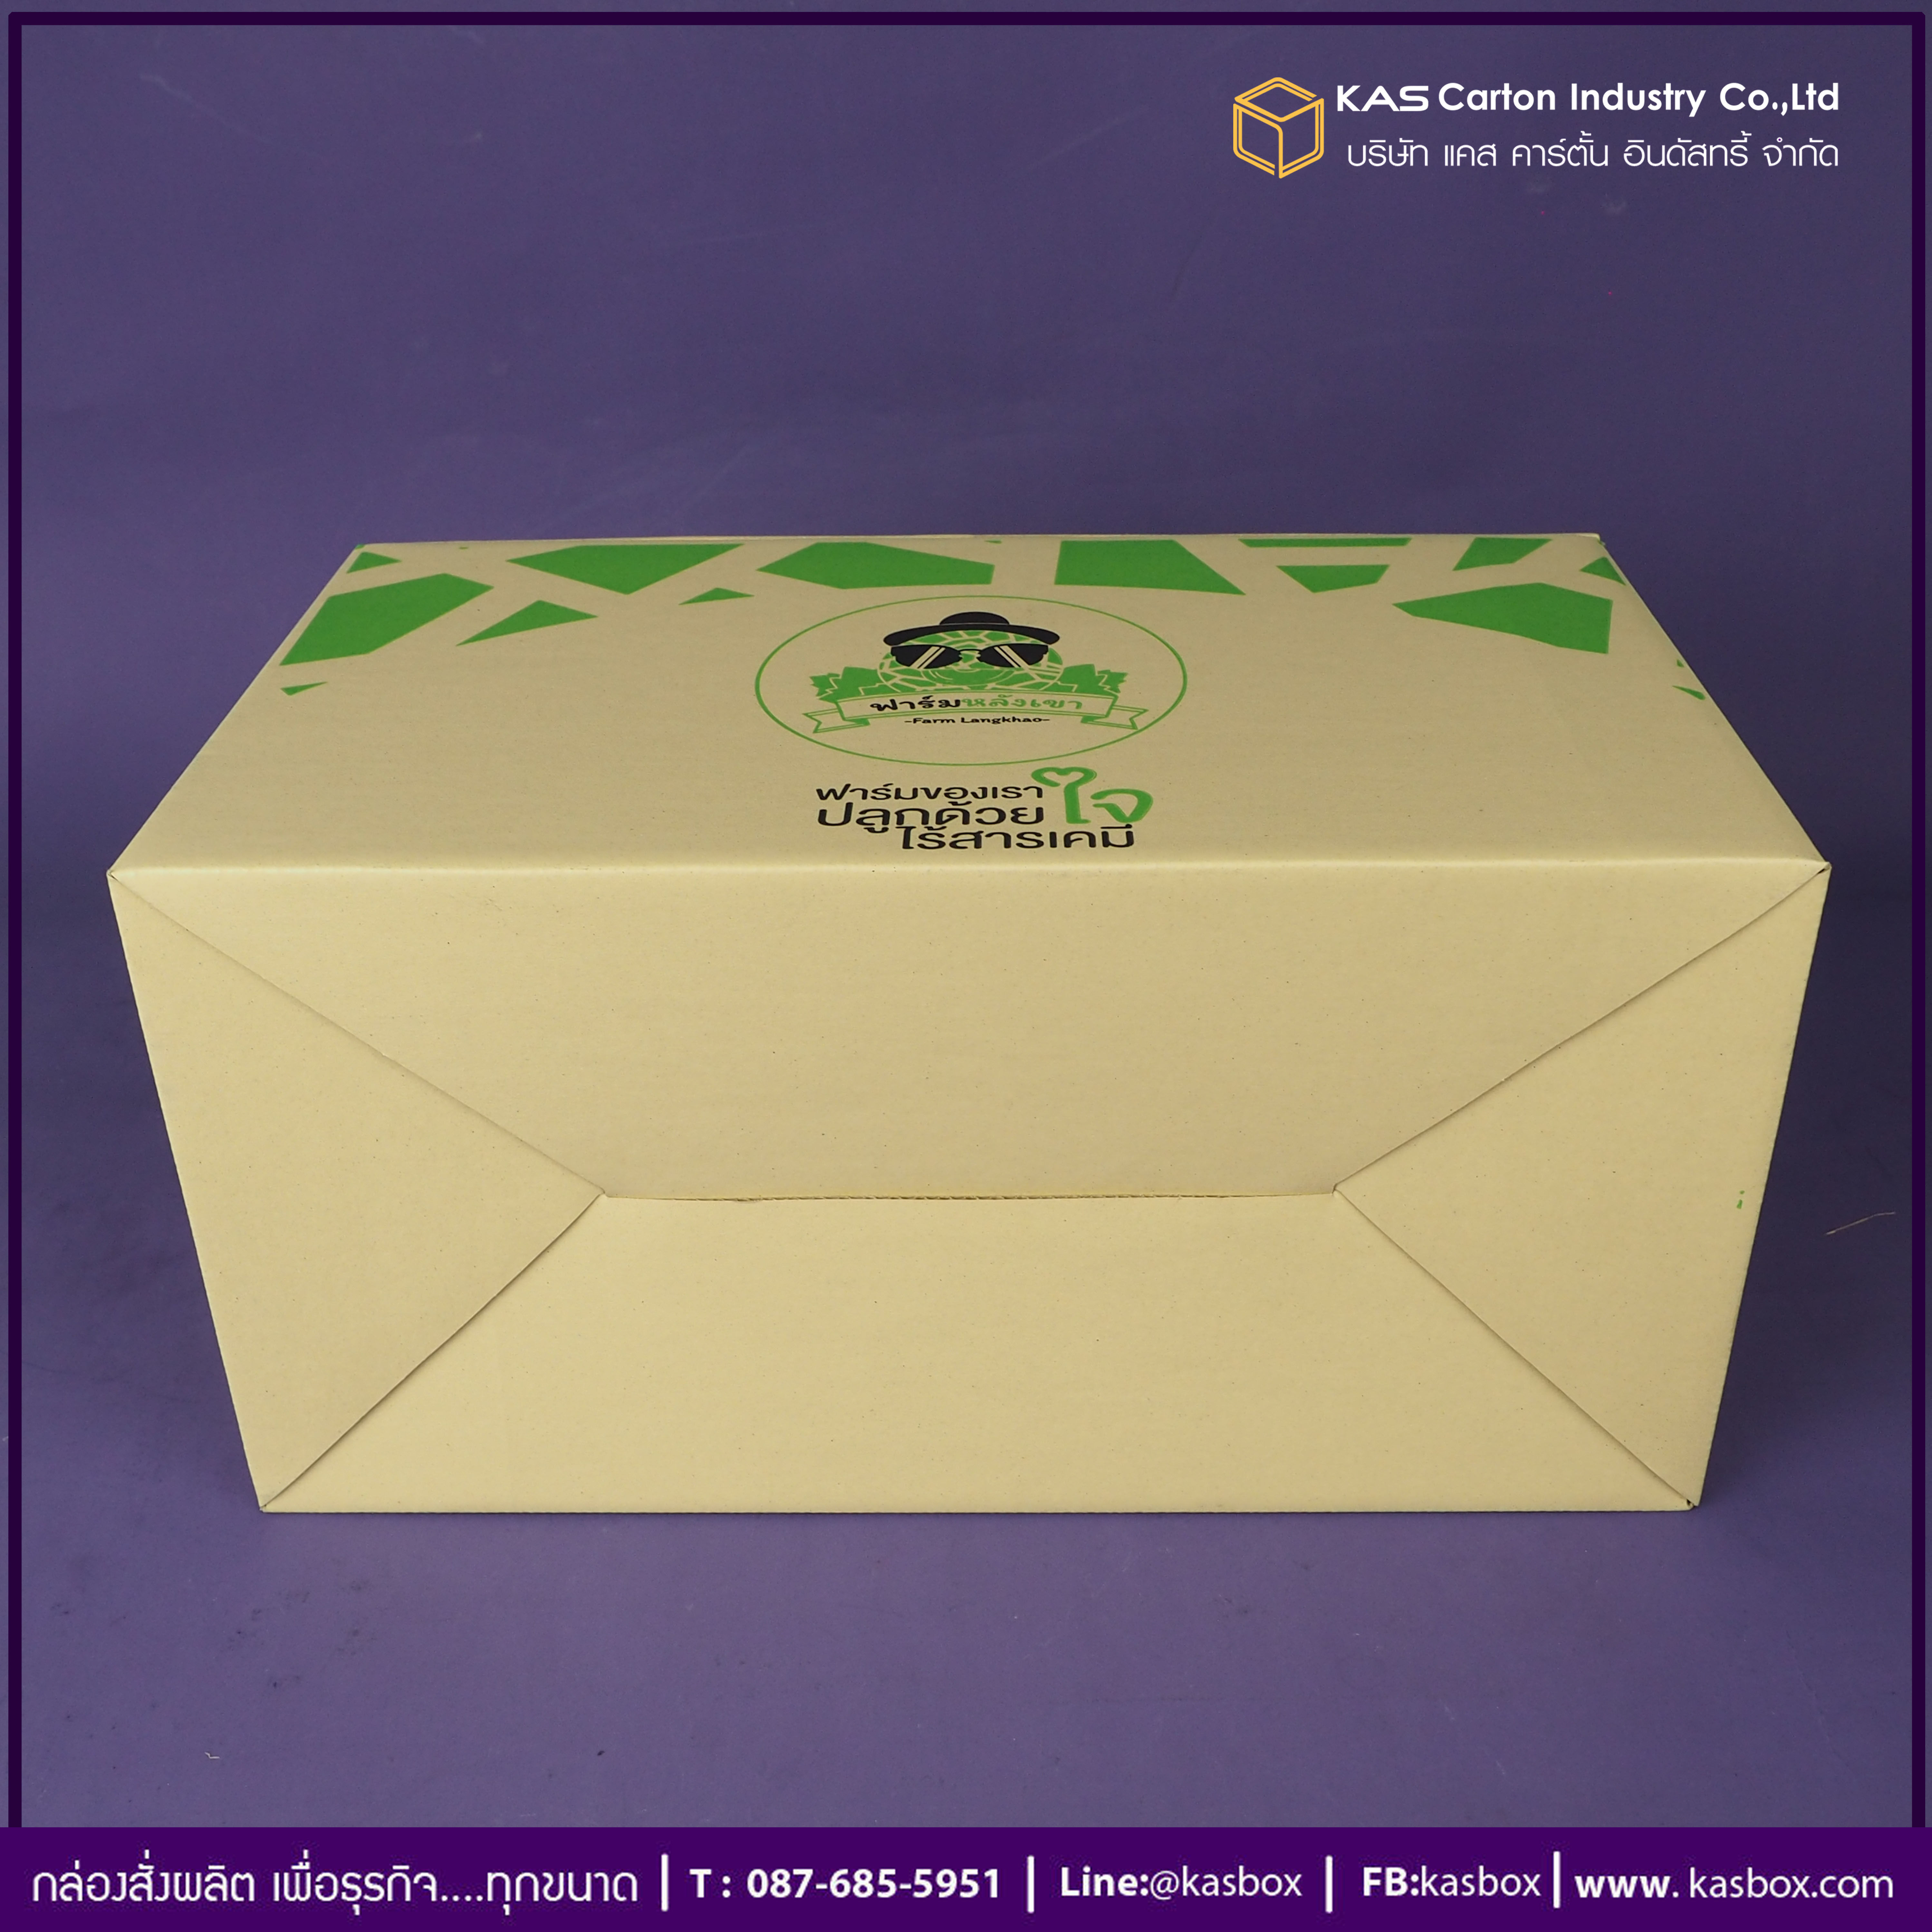 กล่องลูกฟูก สำเร็จรูป และ สั่งผลิต ตามความต้องการลูกค้า กล่องผลไม้ เมล่อน กล่องลูกฟูก SME